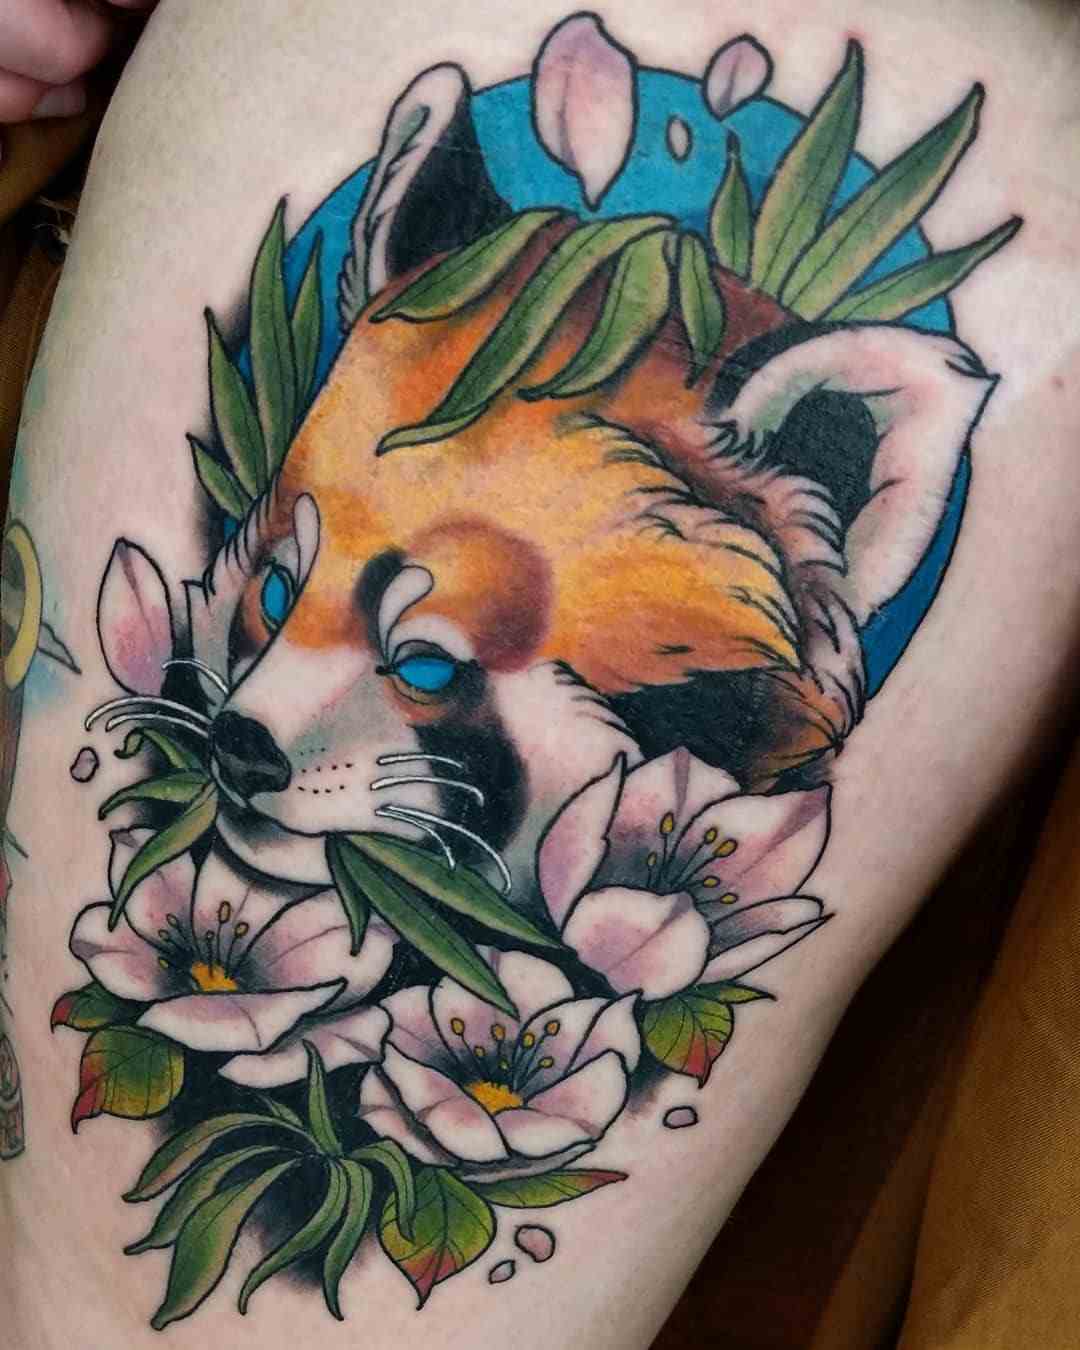 Panda Tattoo Inspiration für Frauen mit Blumen in bunten Farben